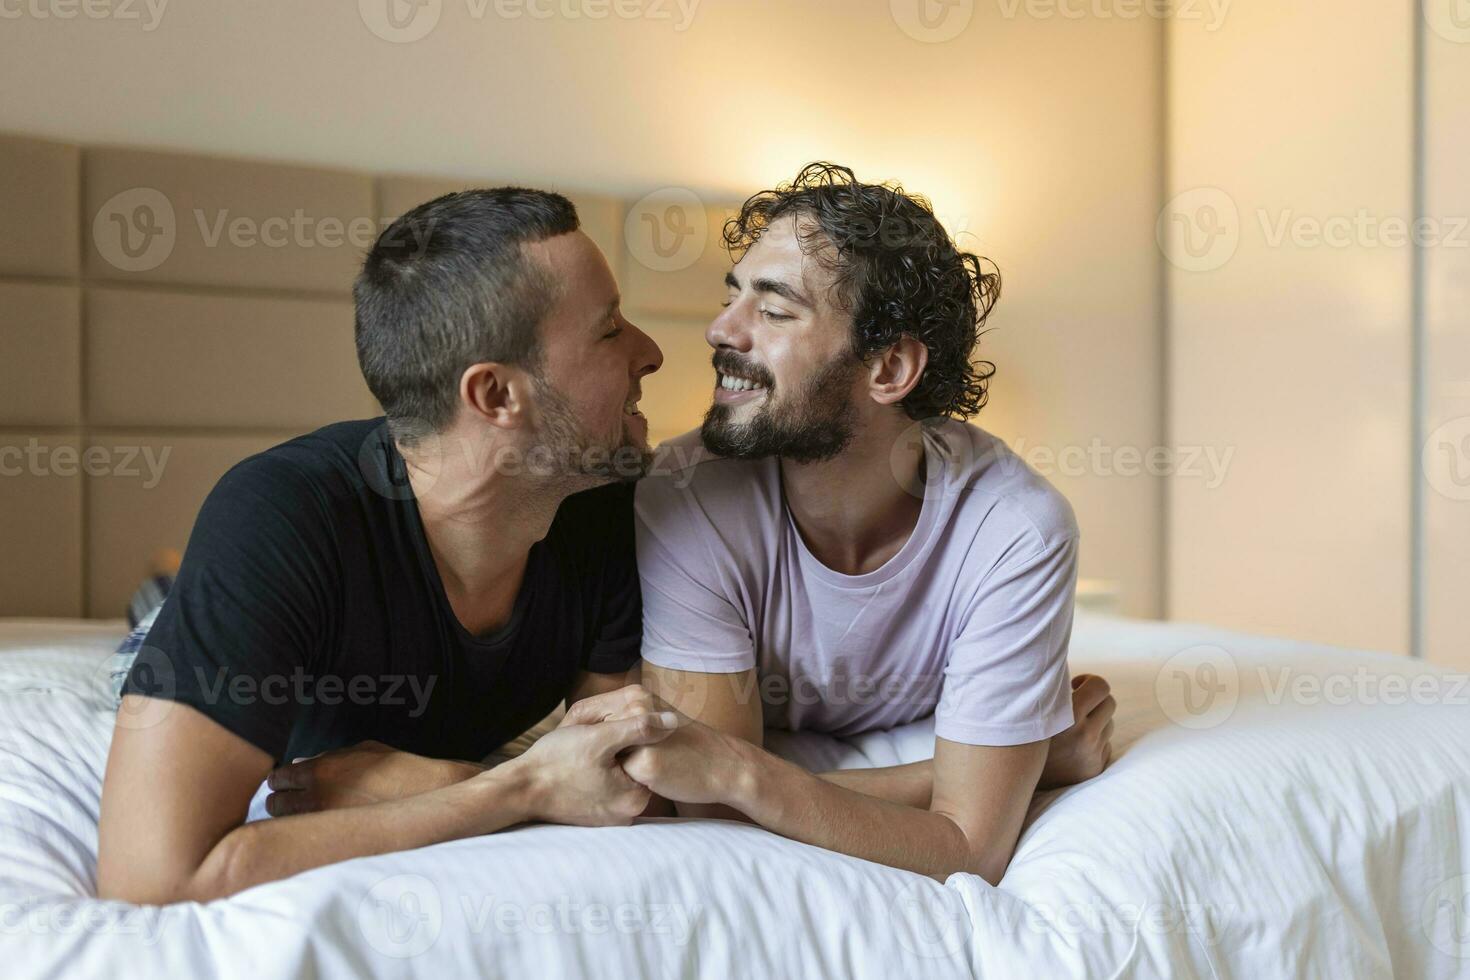 contento gay coppia avendo tenero momenti nel Camera da letto - omosessuale amore relazione e Genere uguaglianza concetto foto